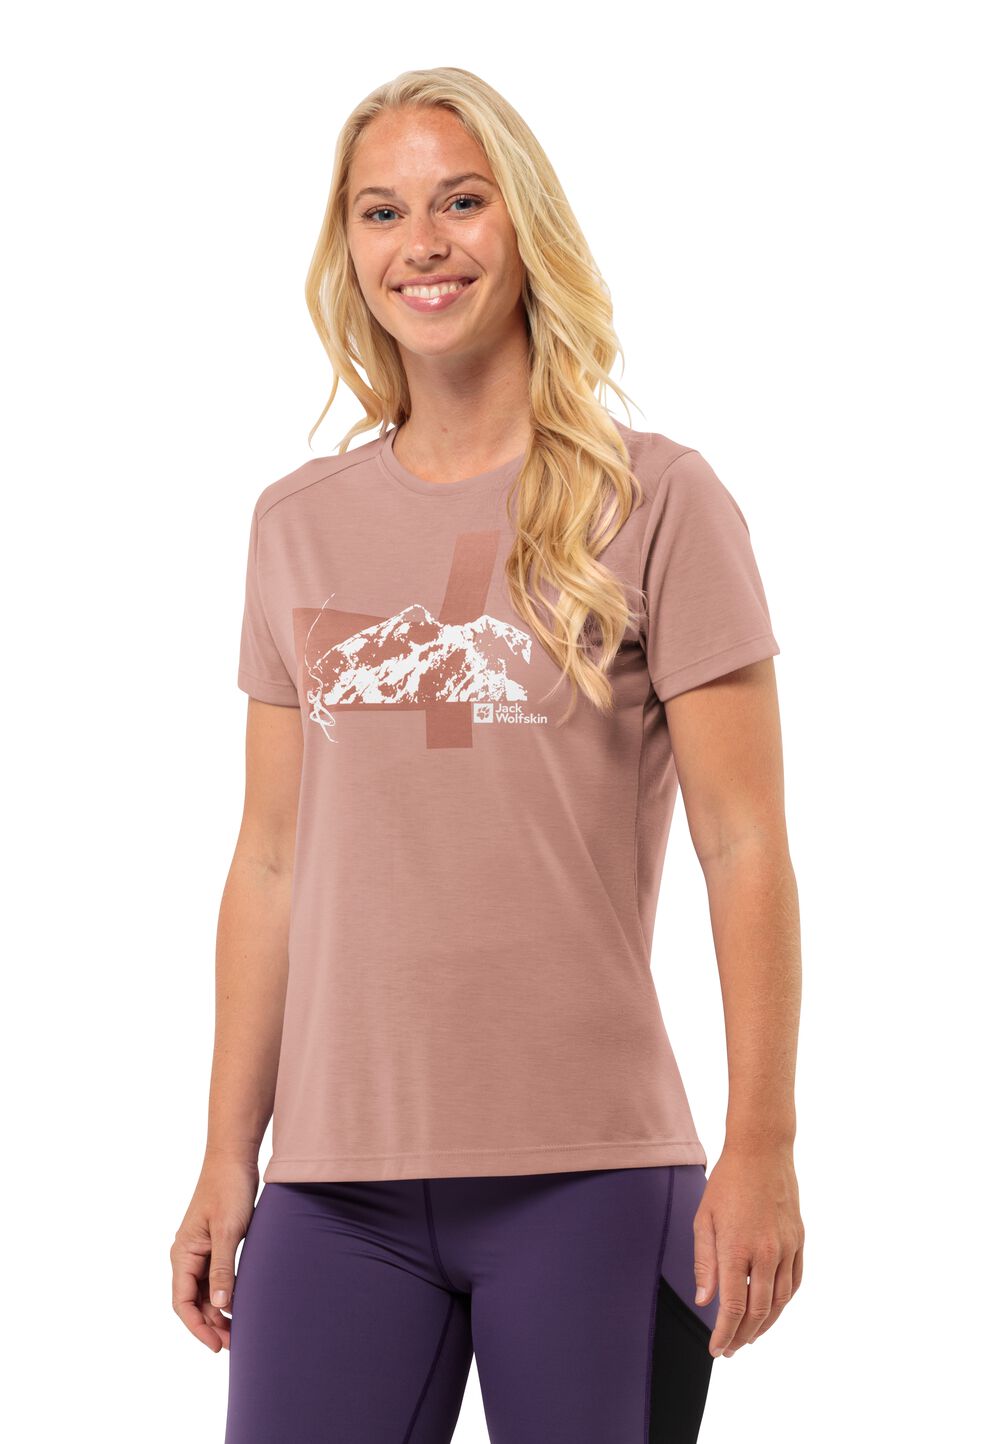 Jack Wolfskin Funktionsshirt Damen Vonnan S/S Graphic T-Shirt Women XL braun rose dawn von Jack Wolfskin